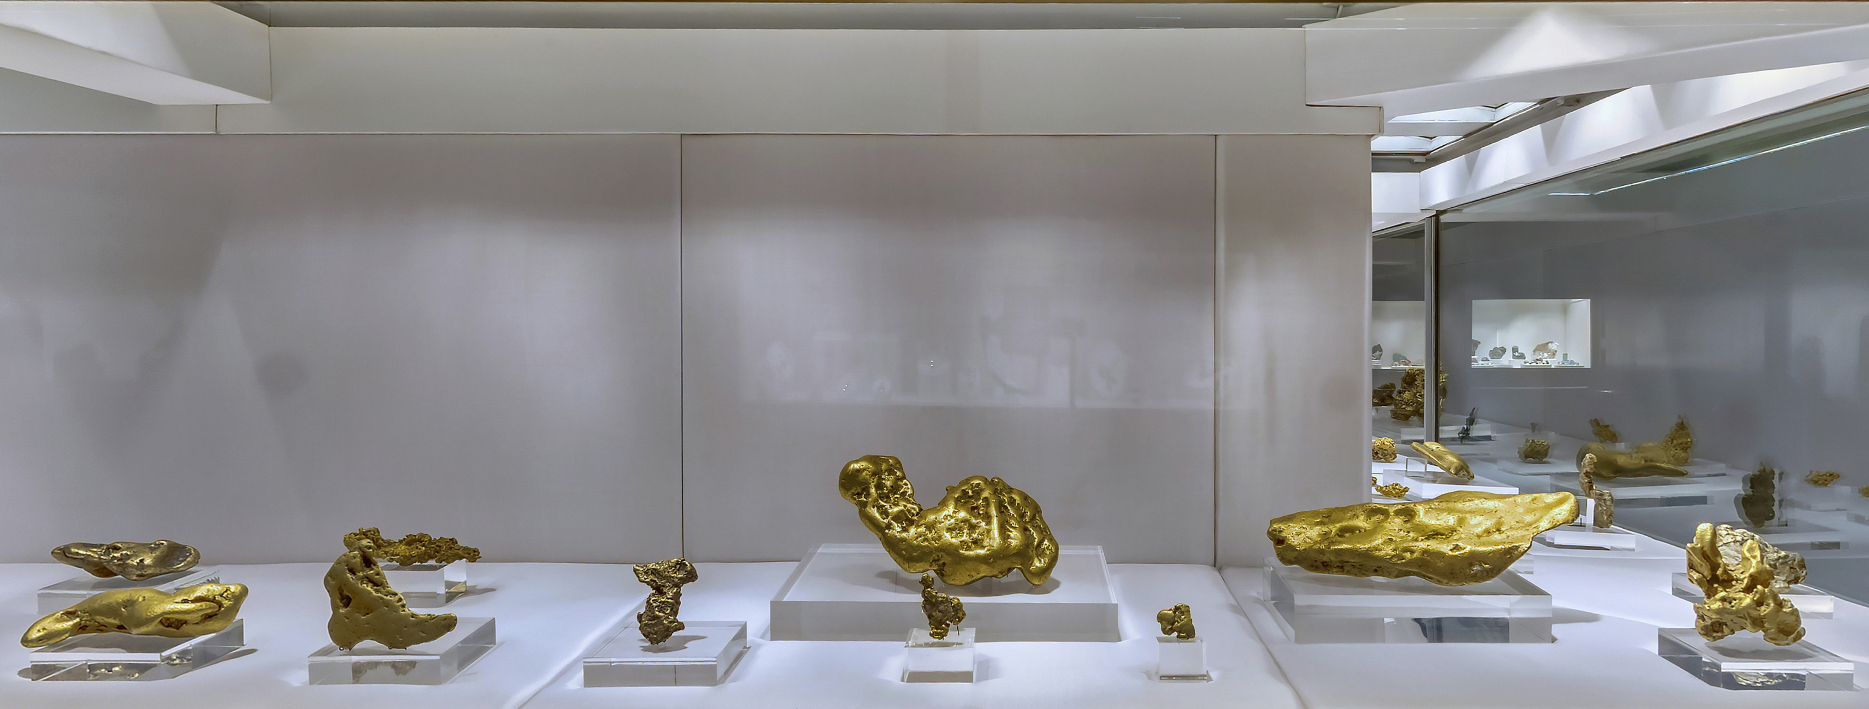 Коллекция самородков и слитков платины и золота Алмазного фонда Кремля